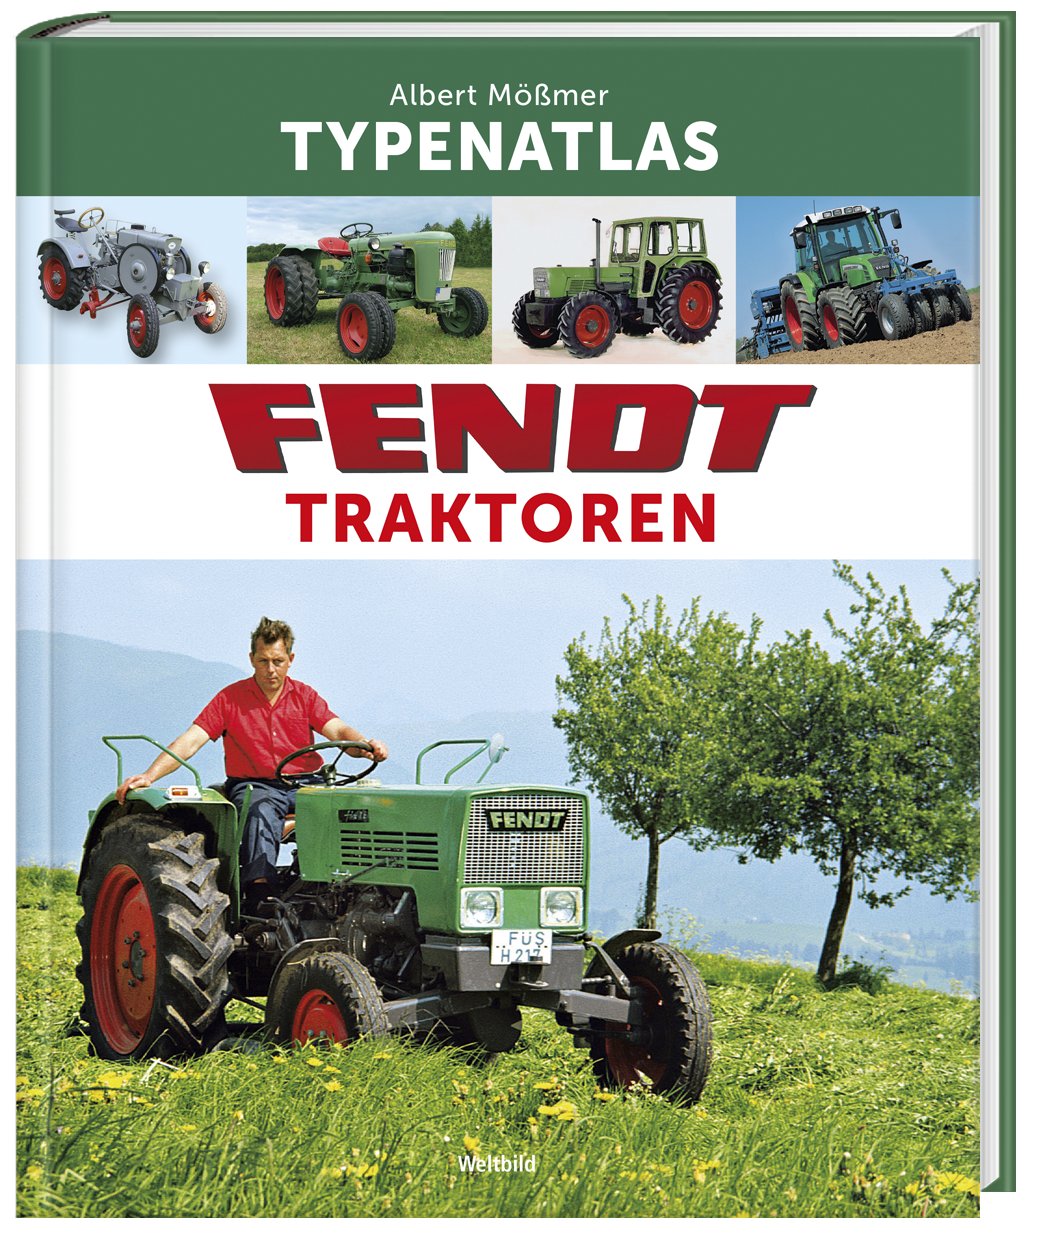 FENDT Traktoren Das Typenbuch Typenatlas Modelle Landmaschinen Bildband Buch 